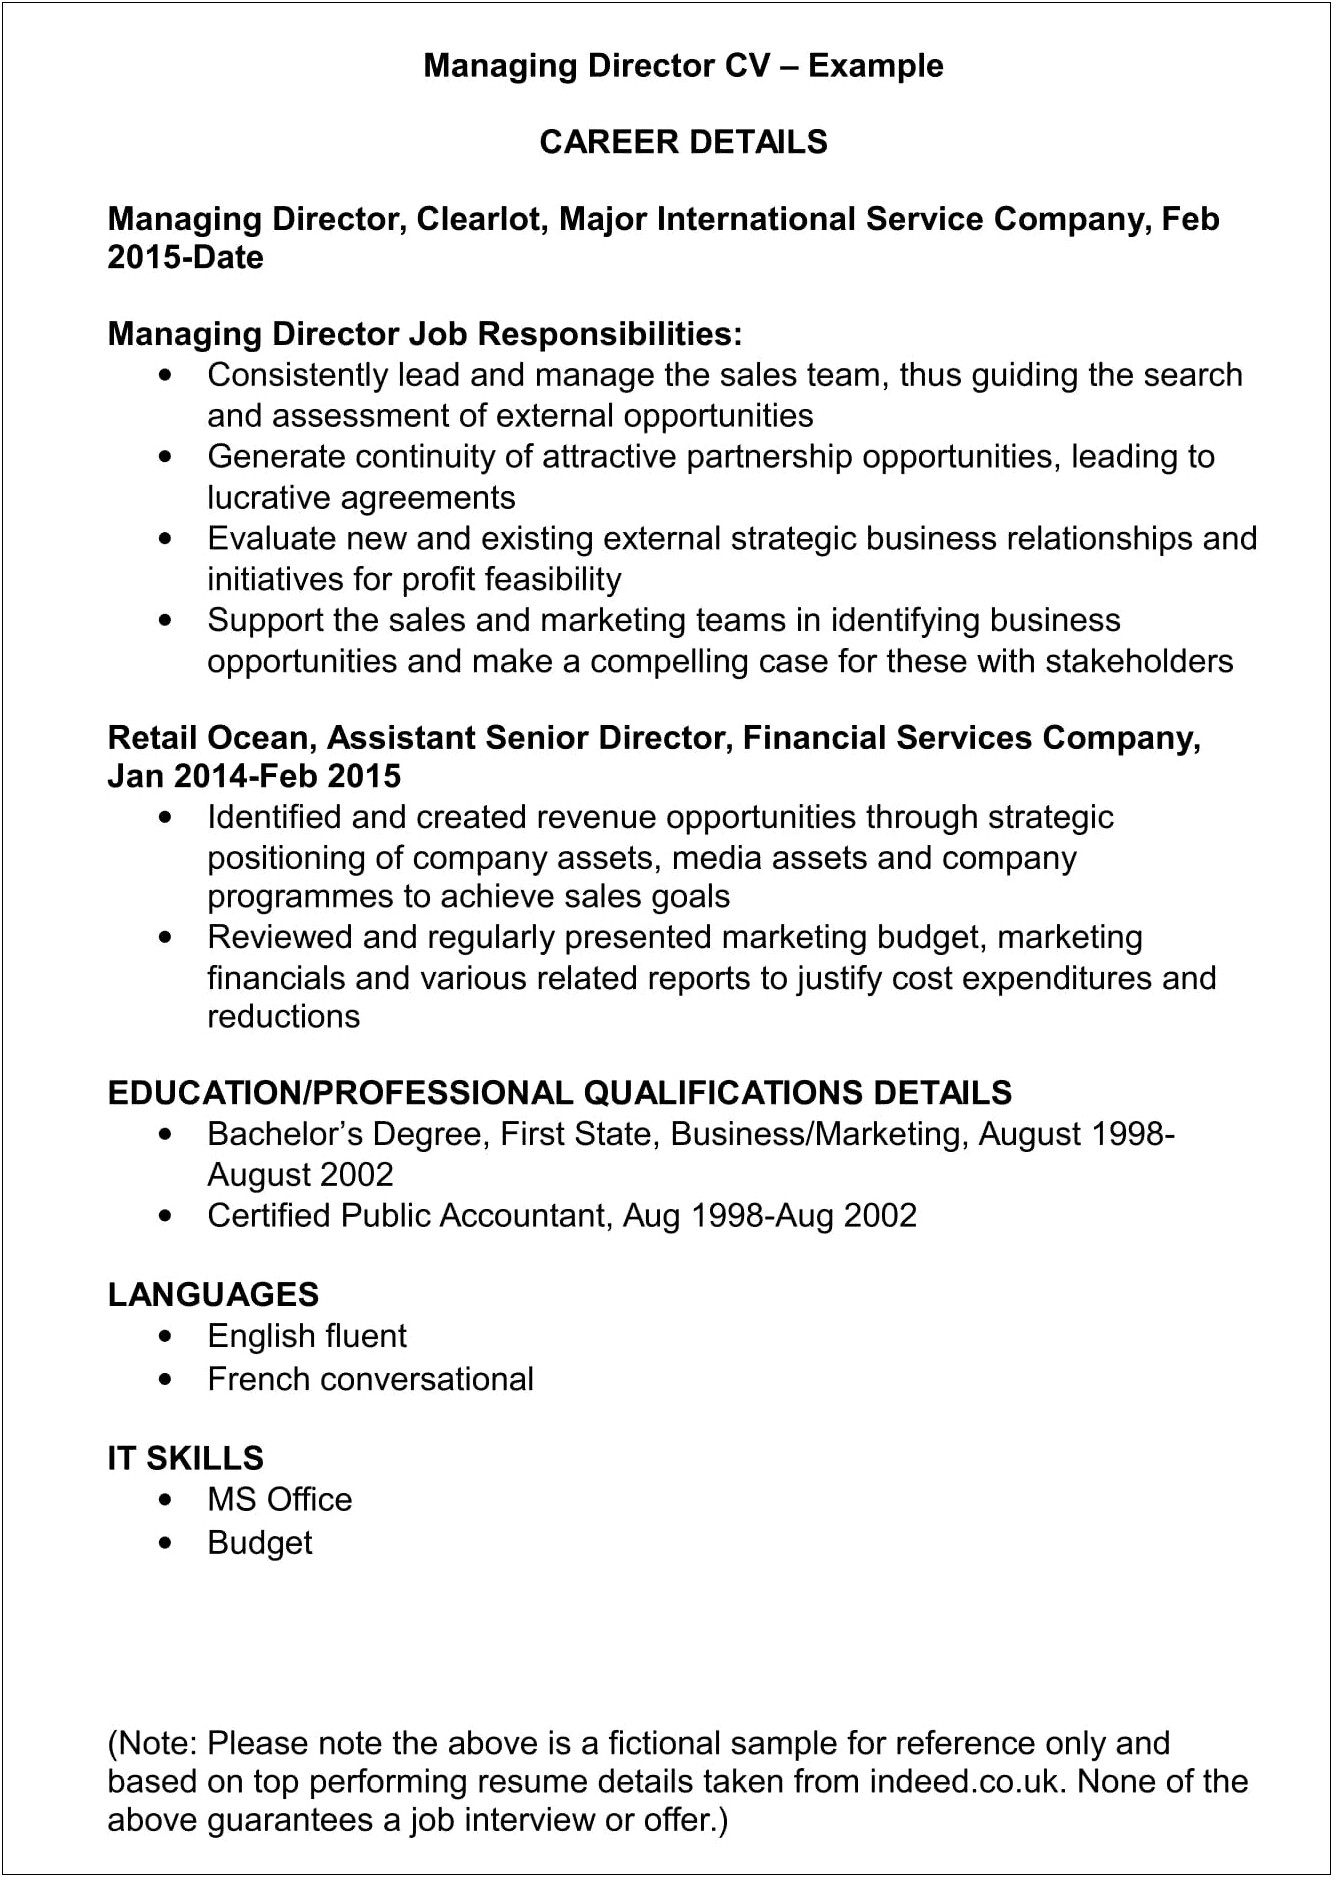 Resume For Senior Management Position